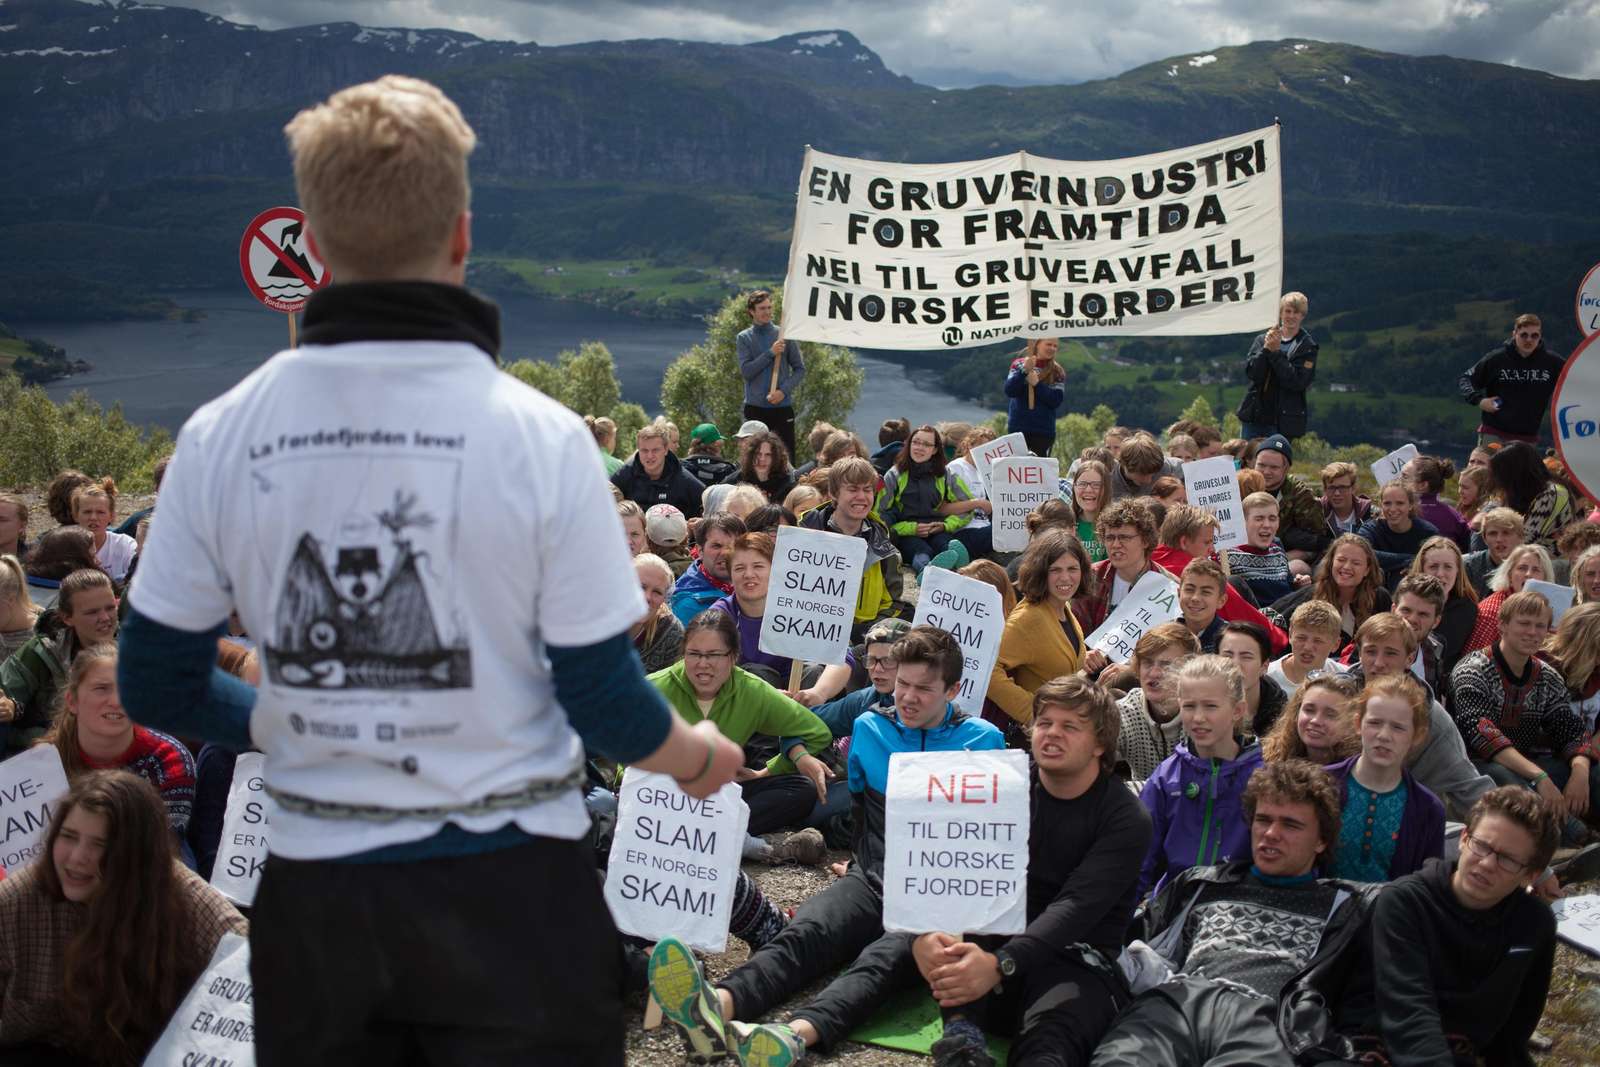 Demonstration against mining plans